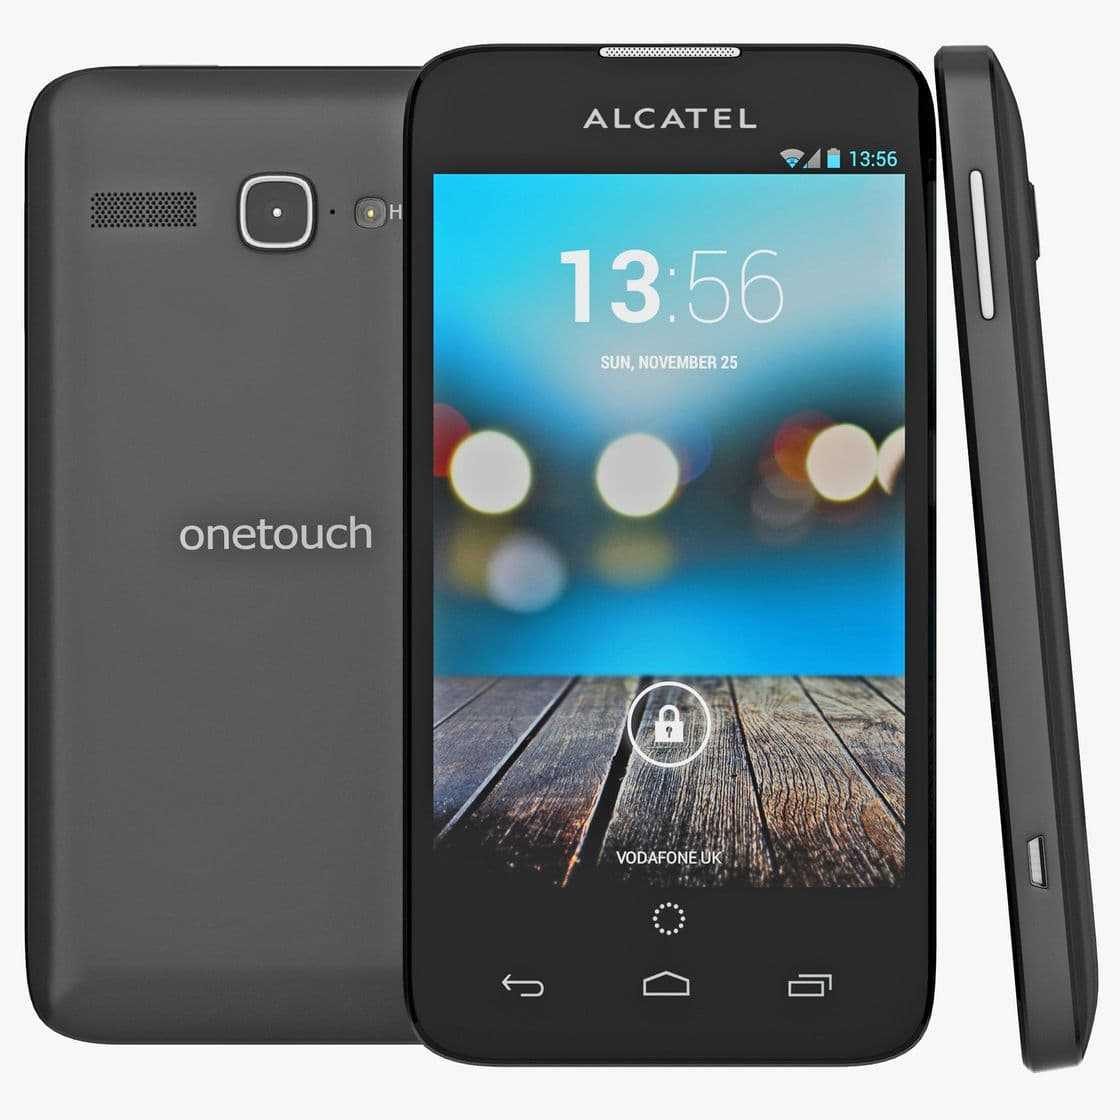 Alcatel onetouch s853 - купить , скидки, цена, отзывы, обзор, характеристики - мобильные телефоны